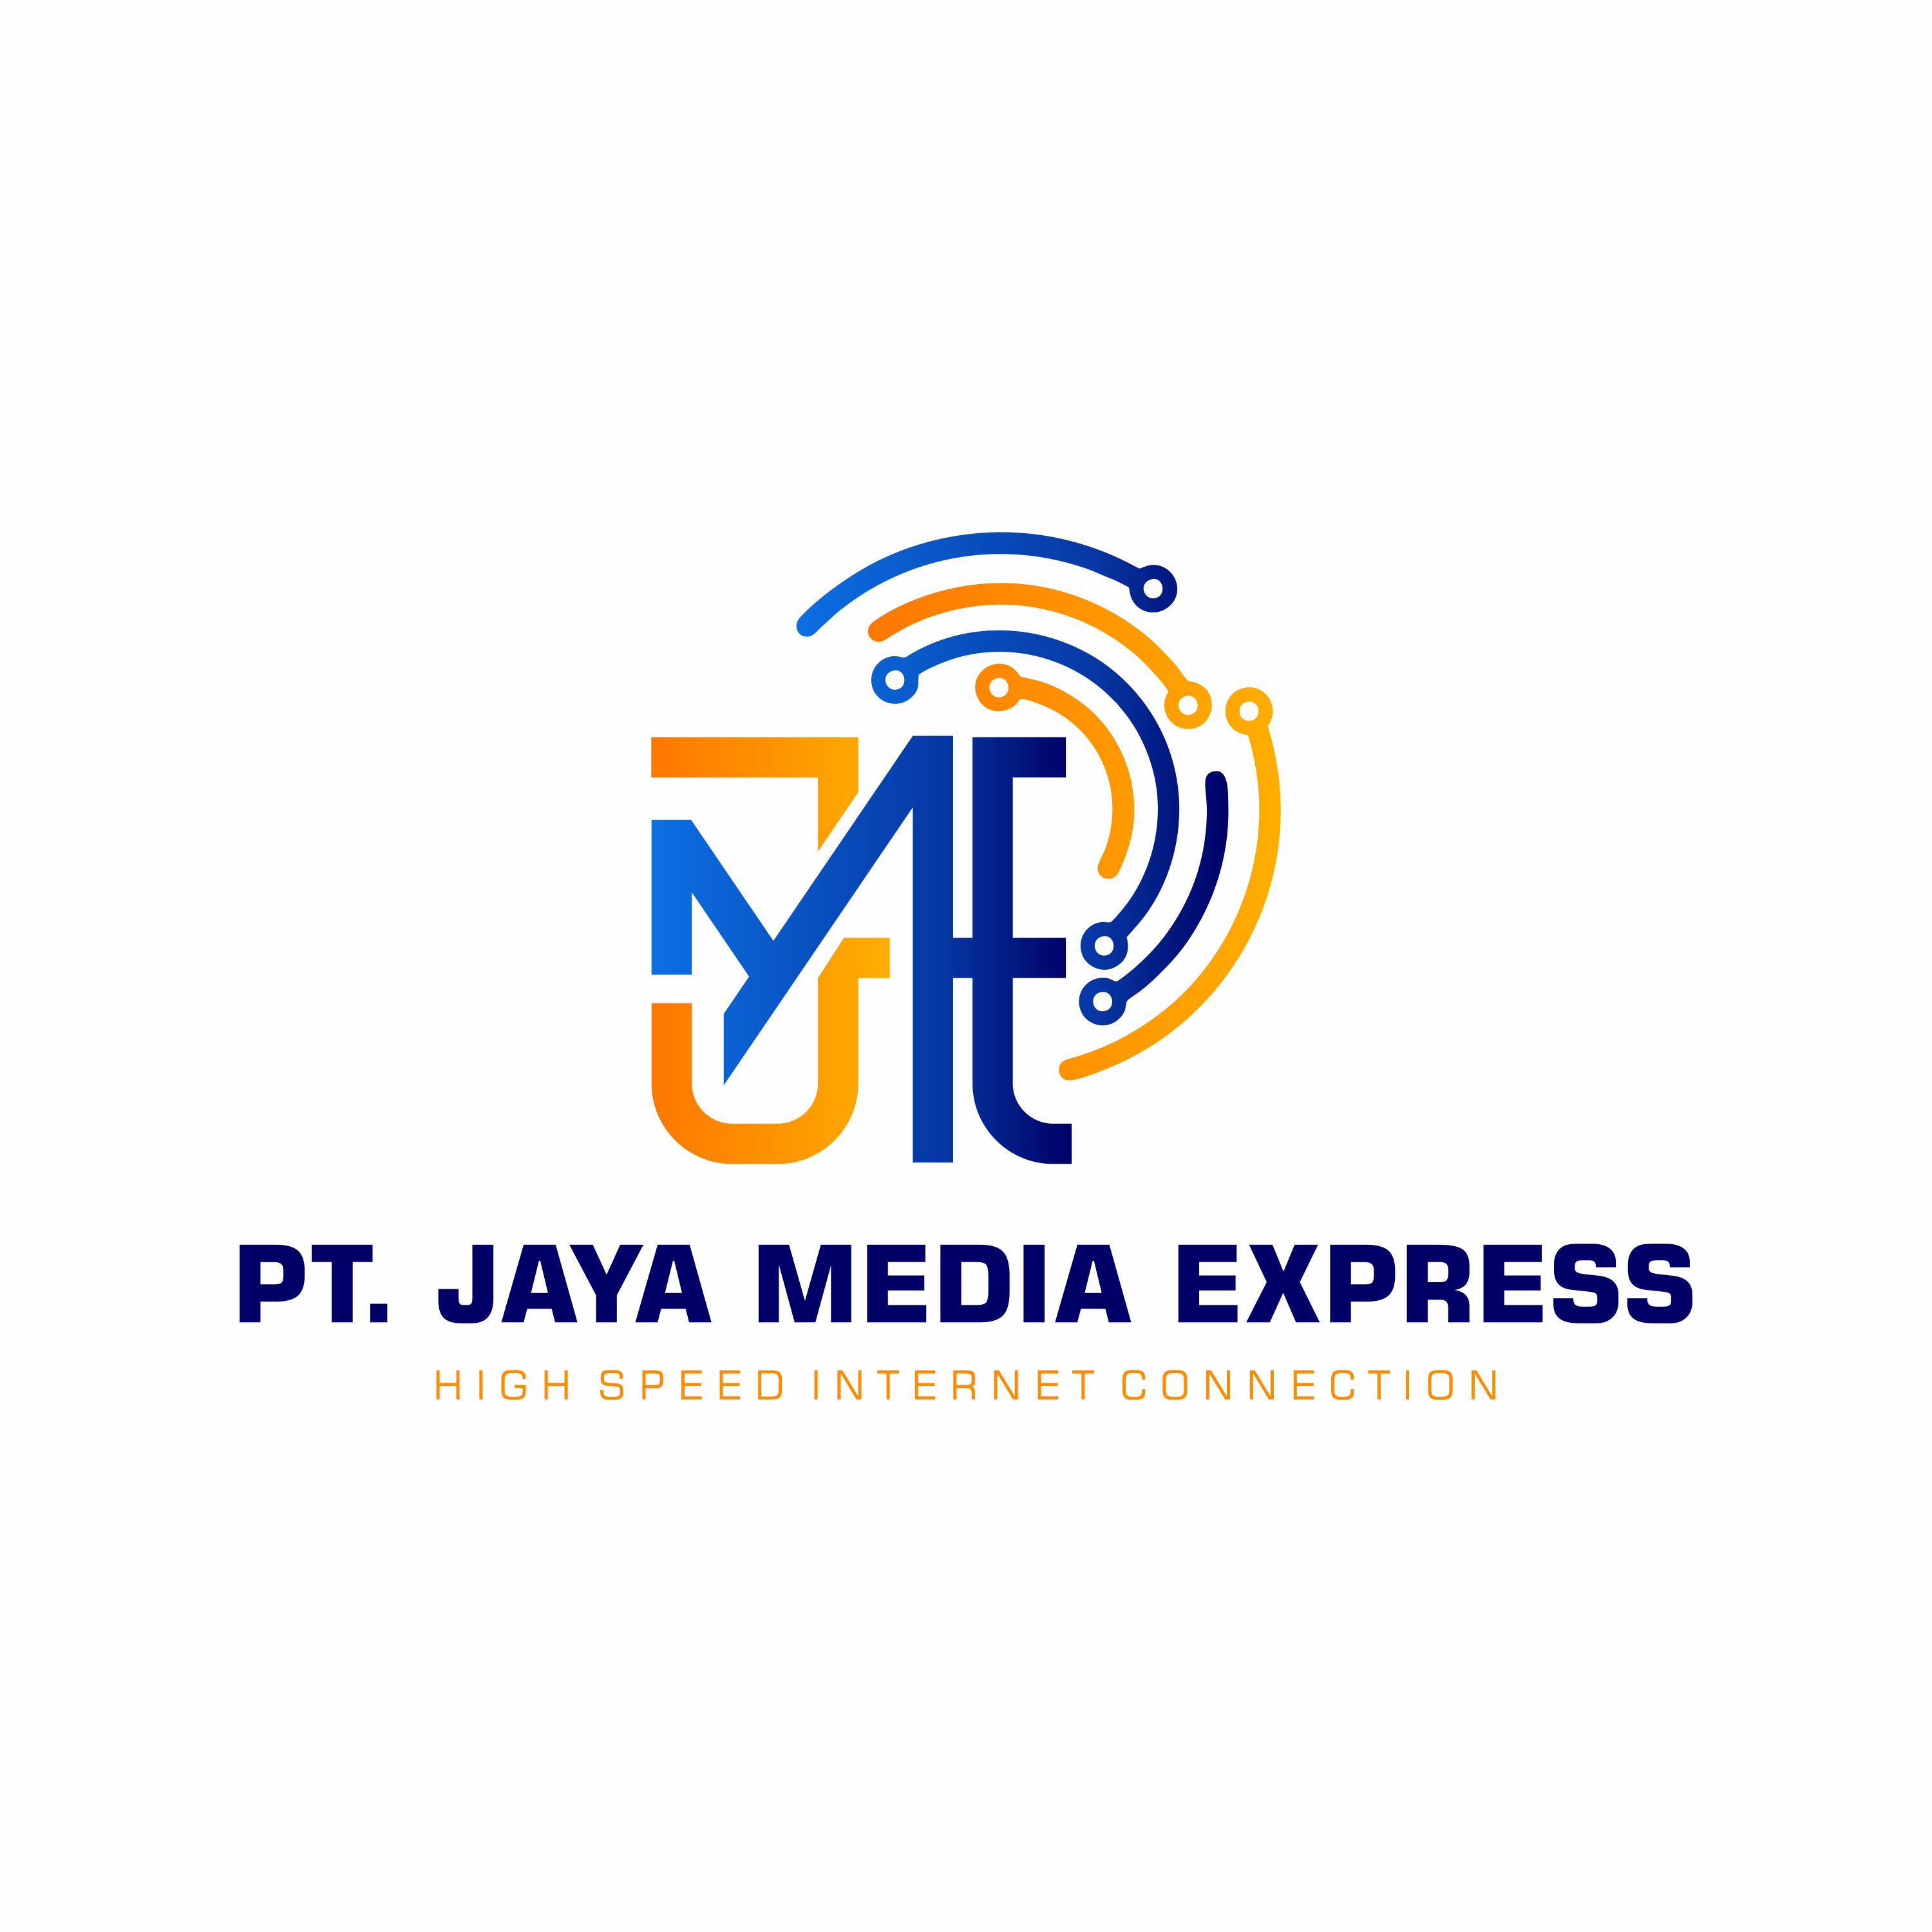 PT. JAYA MEDIA EXPRESS